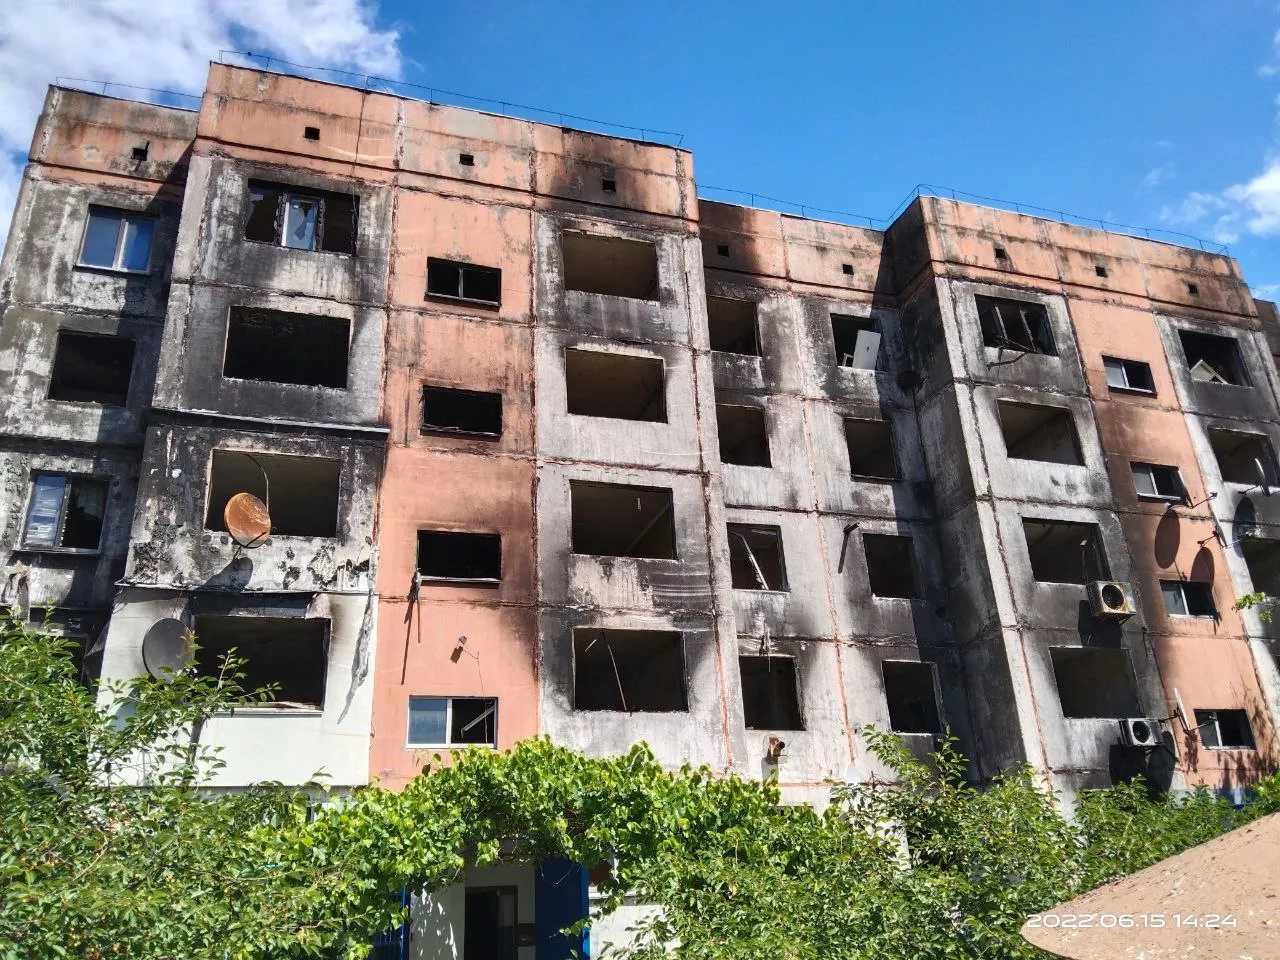 Этот жилой дом в Калиновке, Киевская область был обстрелян из вертолета ВС России в марте 2022 года